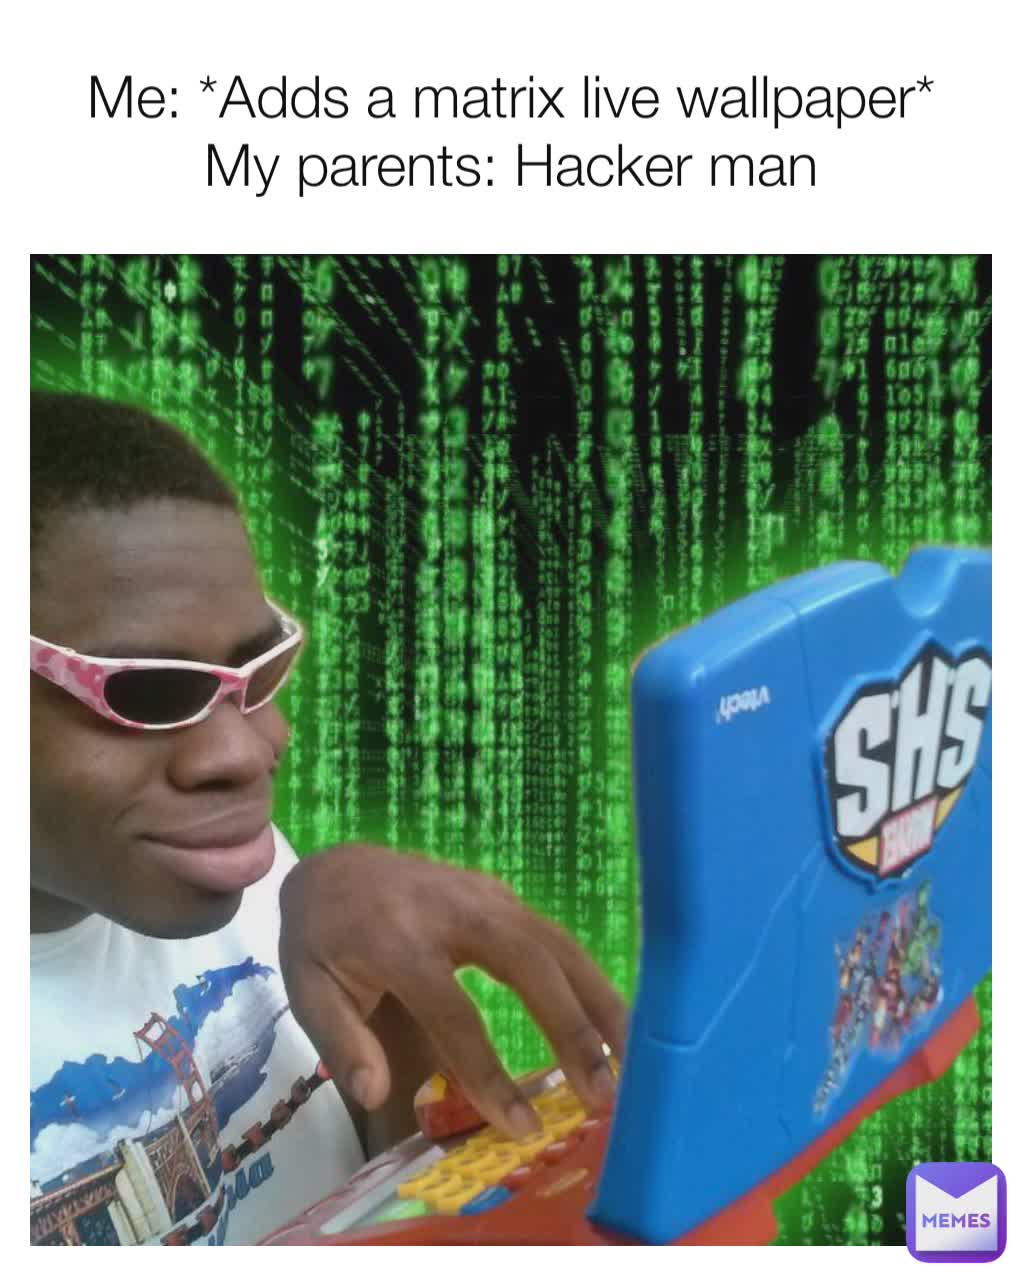 Me: *Adds a matrix live wallpaper*
My parents: Hacker man